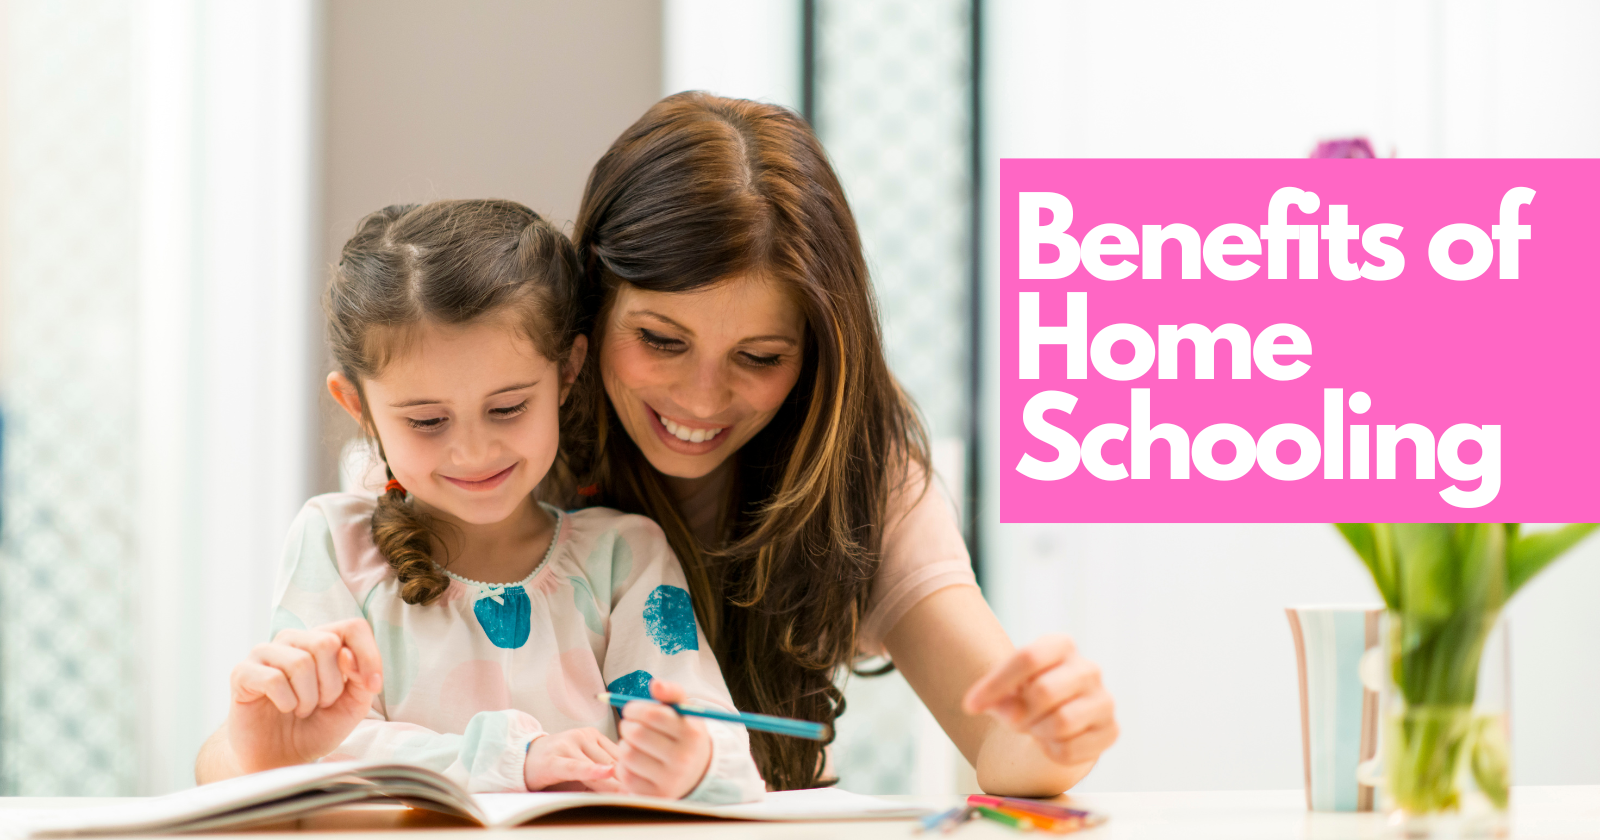 Benefits of Home Schooling